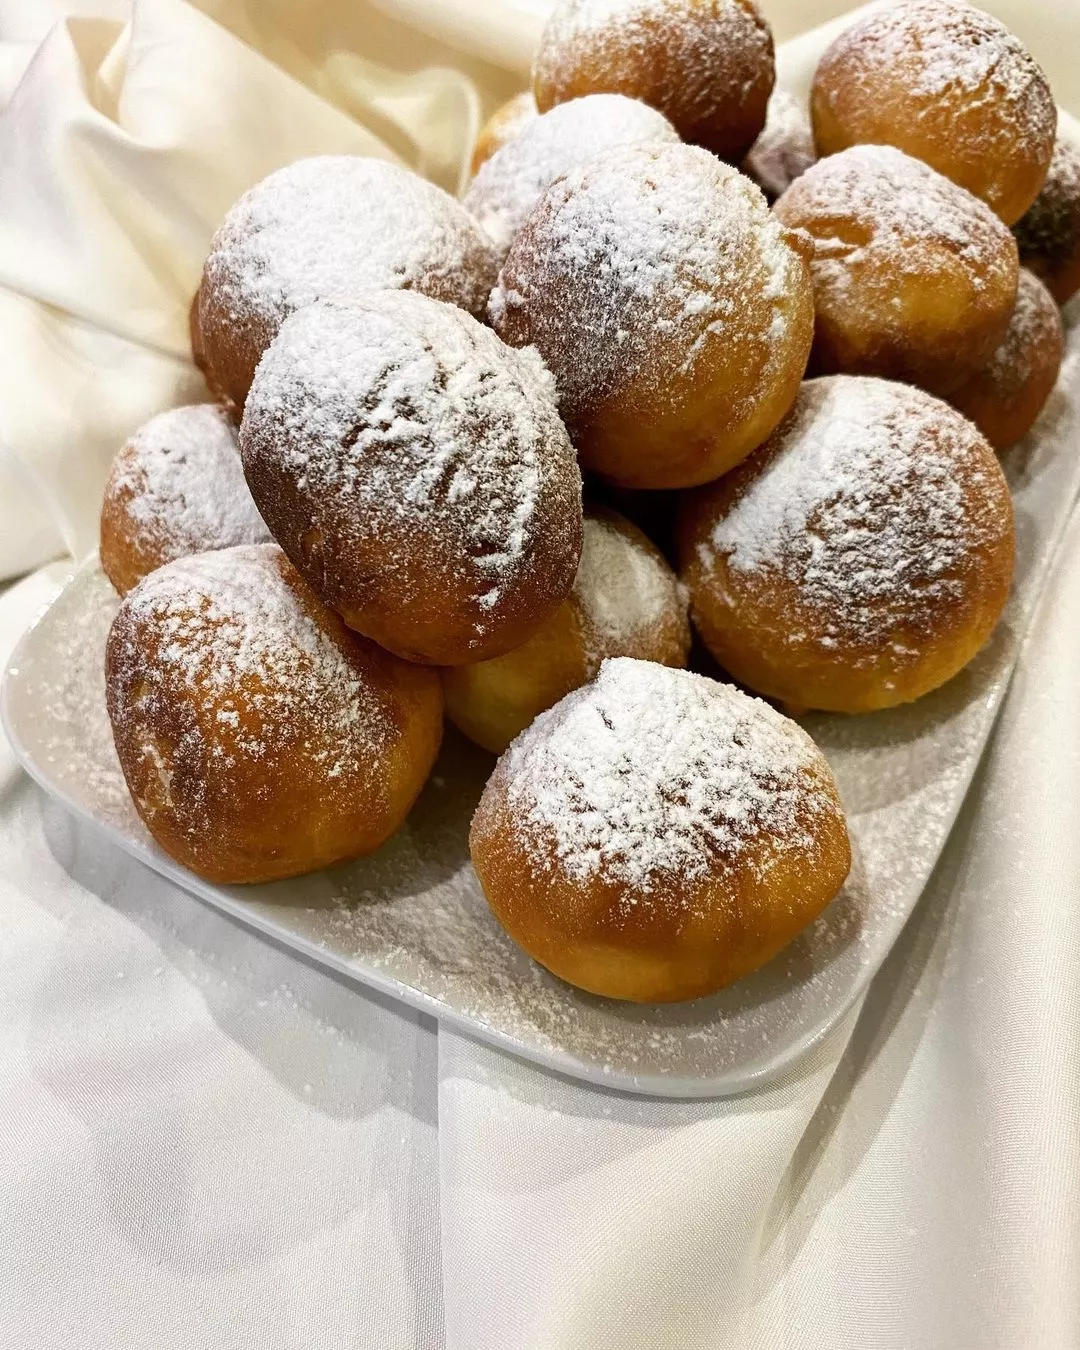 Пончики со сгущенкой: рецепт сладкого десерта с начинкой из сгущенного молока